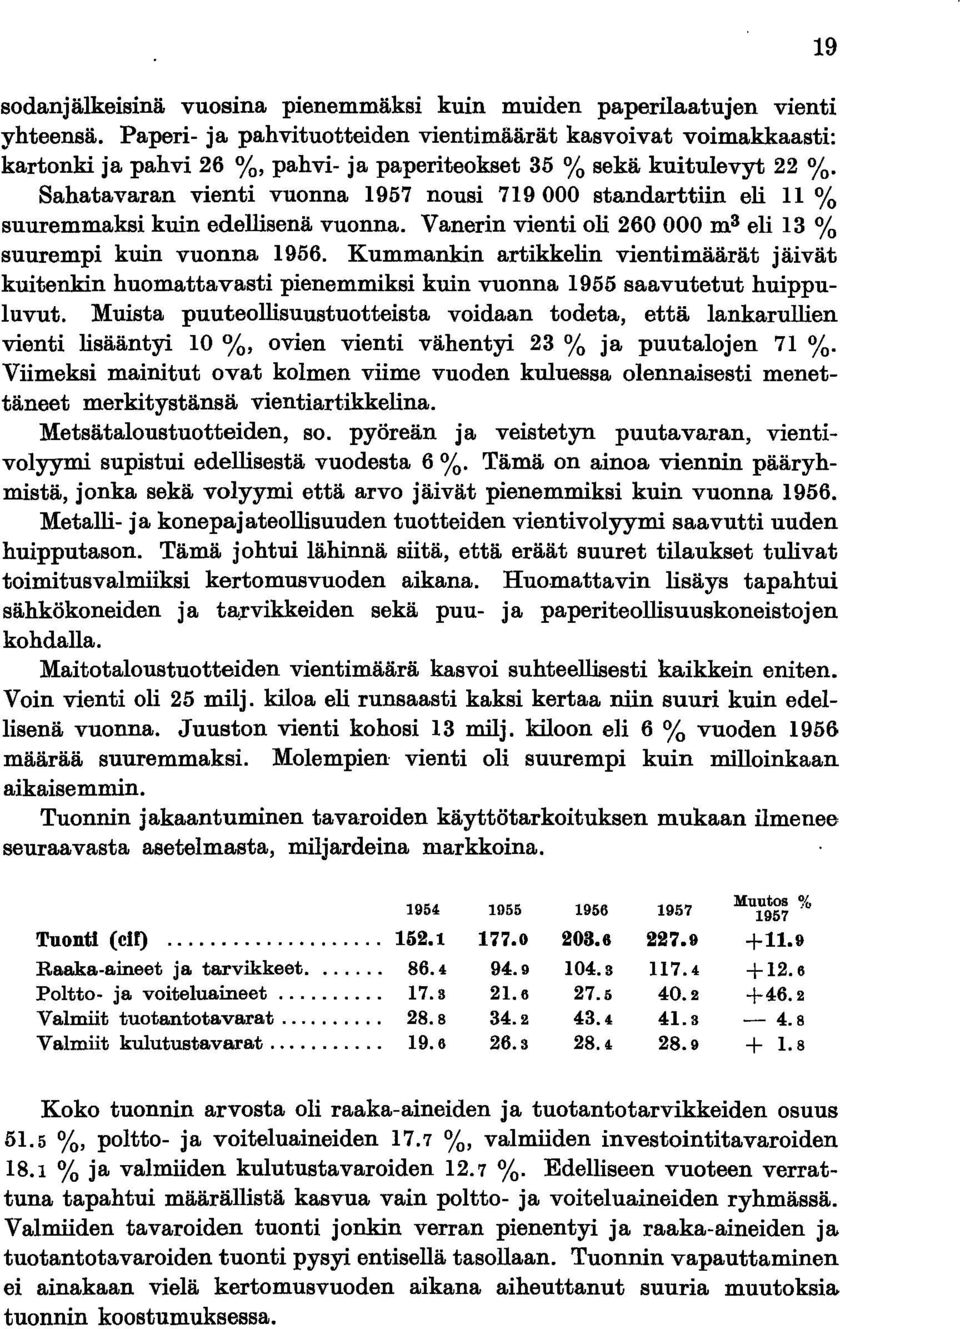 Sahatavaran vienti vuonna 1957 nousi 719000 standarttiin eli 11 % suuremmaksi kuin edellisenä vuonna. Vanerin vienti oli 260000 m 3 eli 13 % suurempi kuin vuonna 1956.